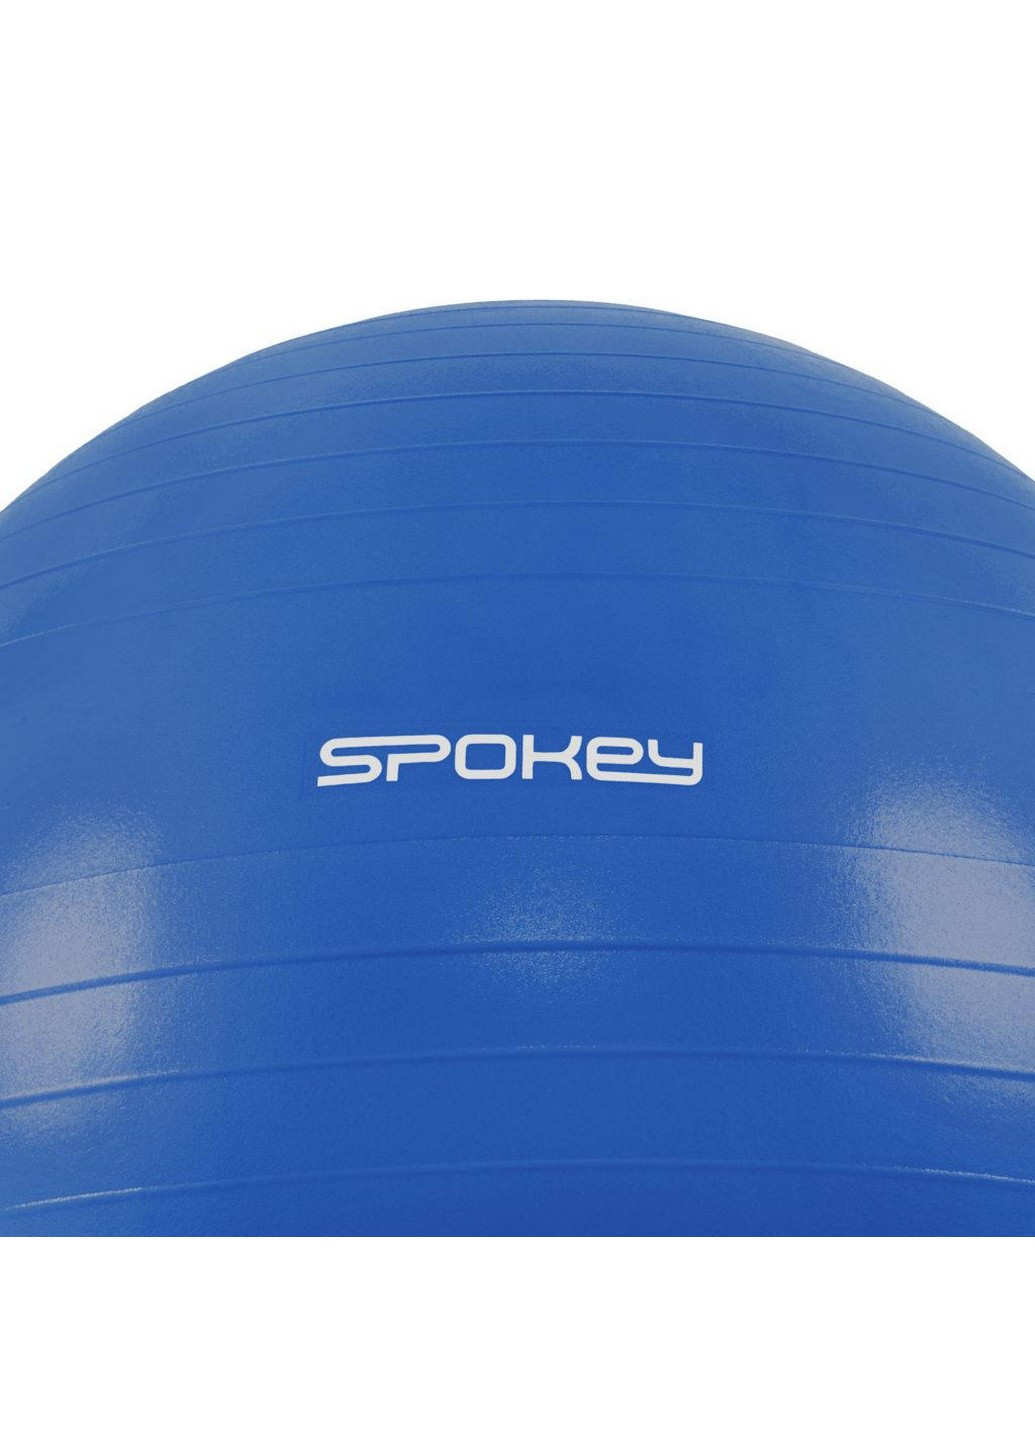 Гимнастический мяч для спорта с насосом 55х55 см Spokey (255405021)